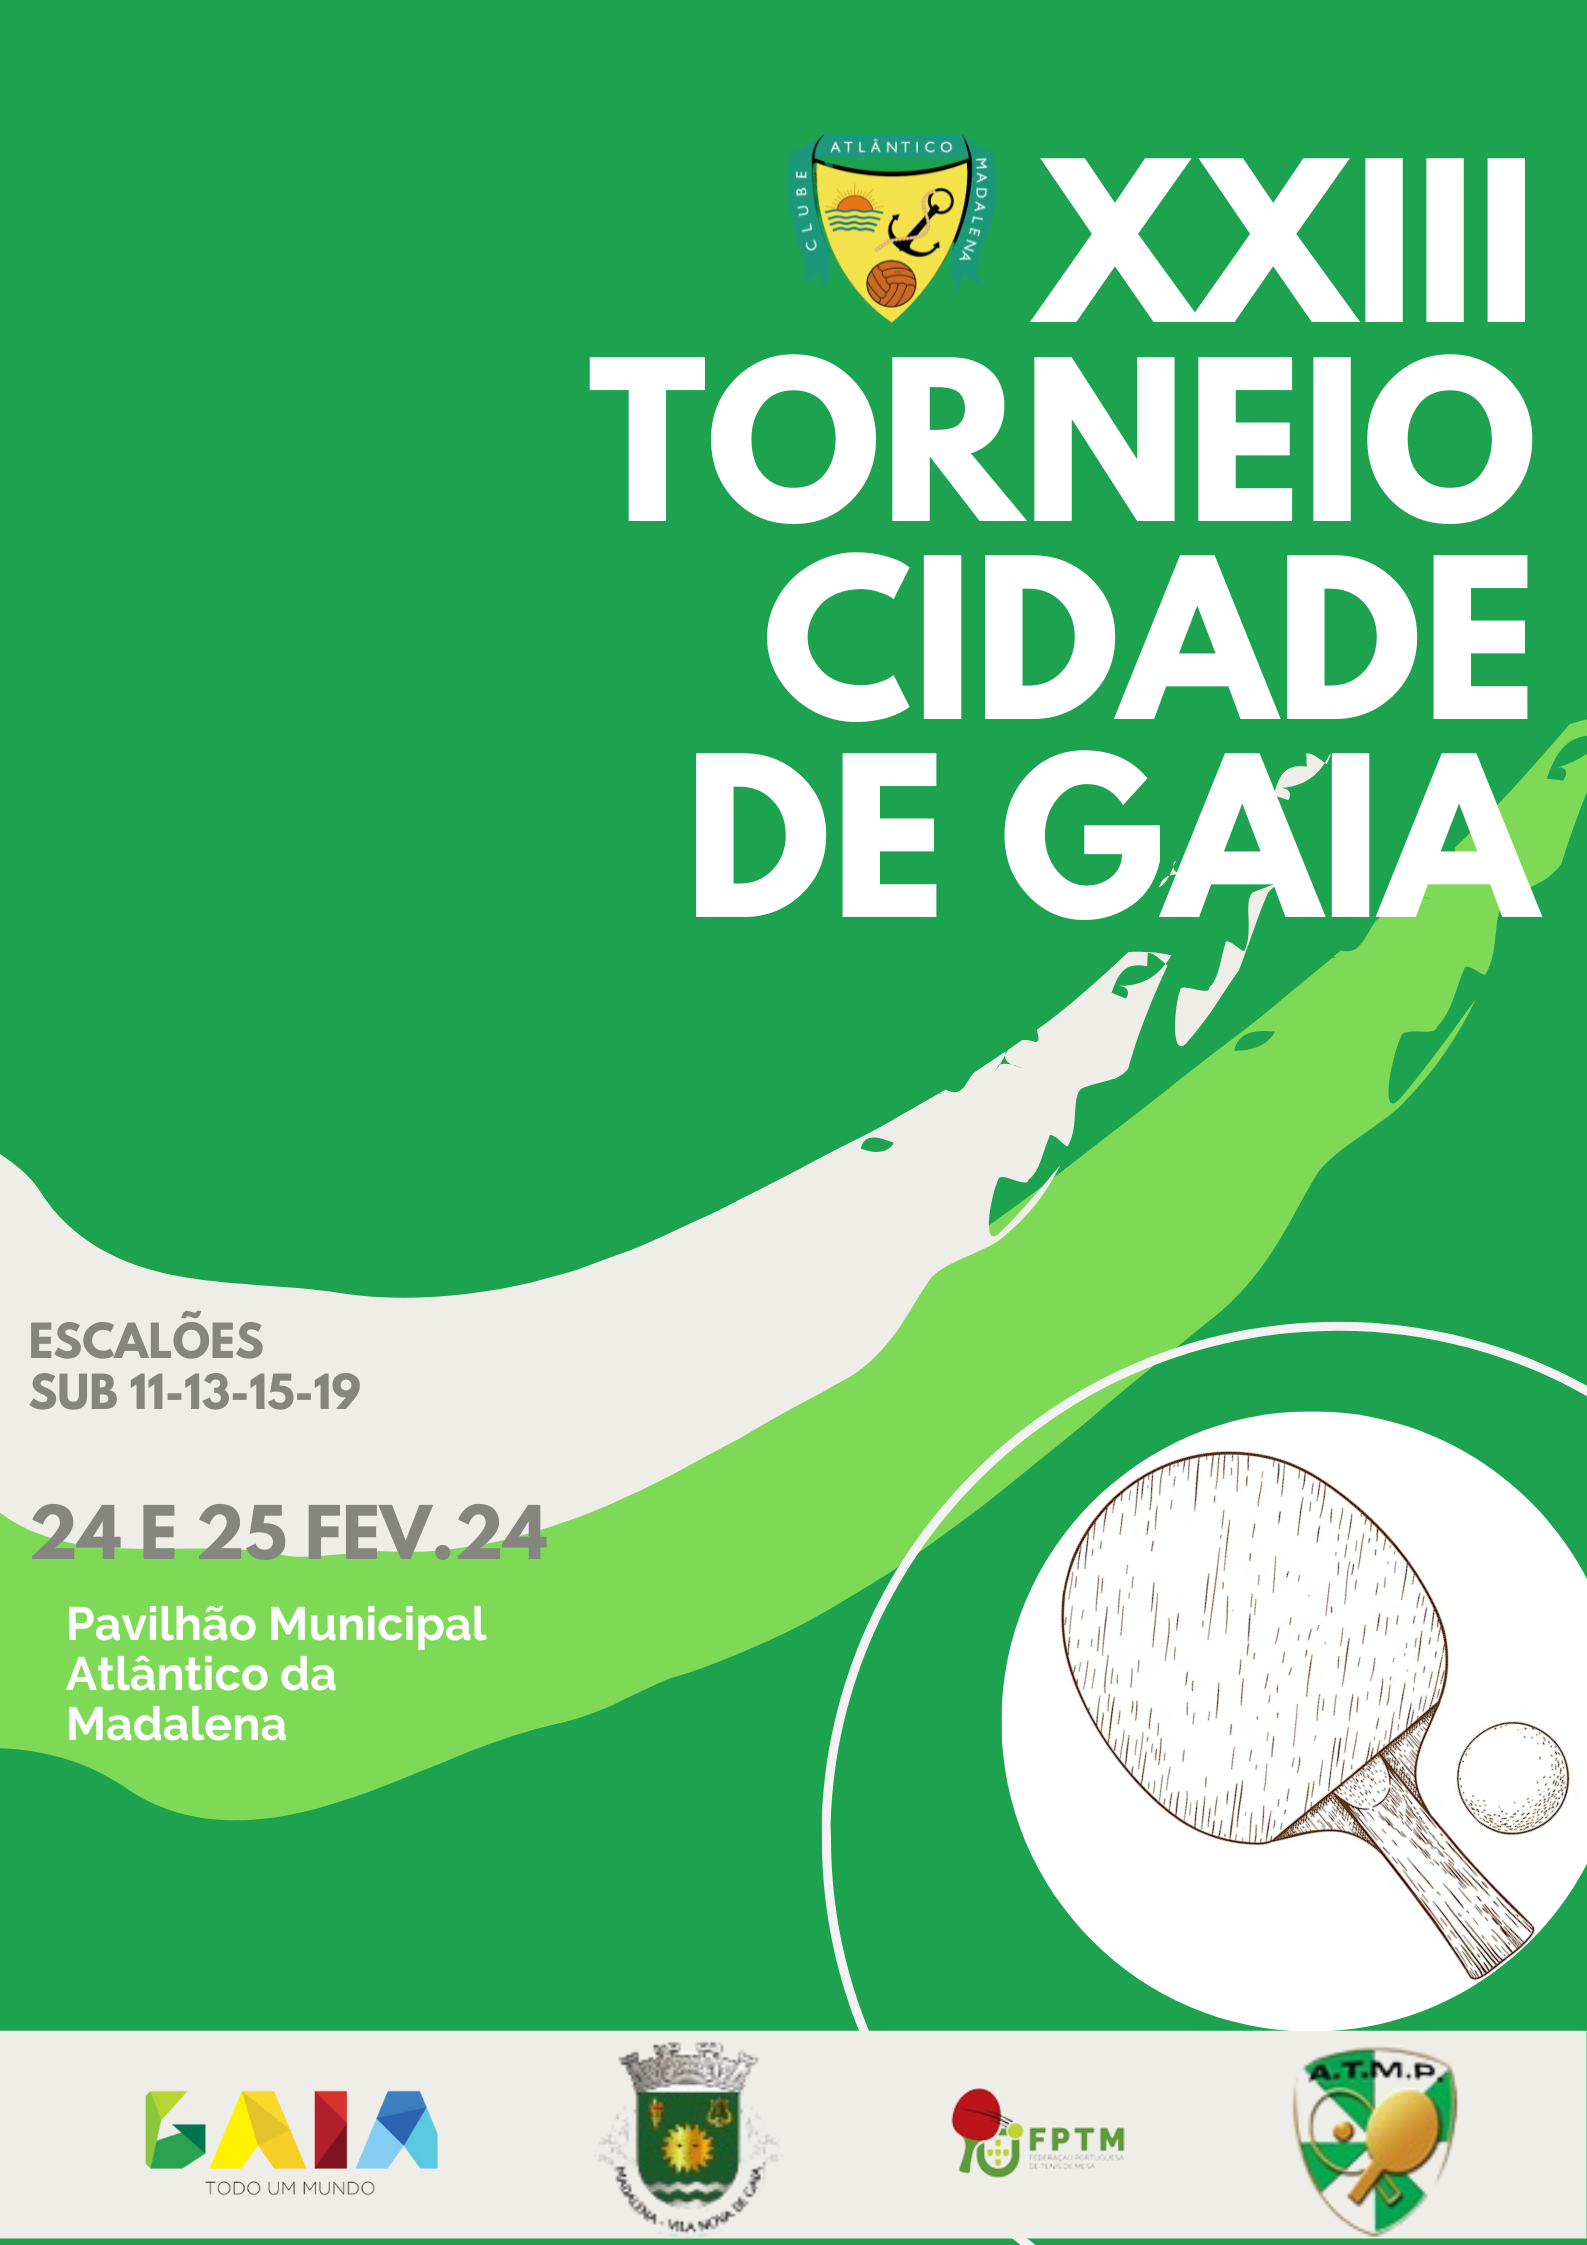 Inscrições XXIII Torneio Aberto Cidade de Gaia / Clube Atlântico da Madalena